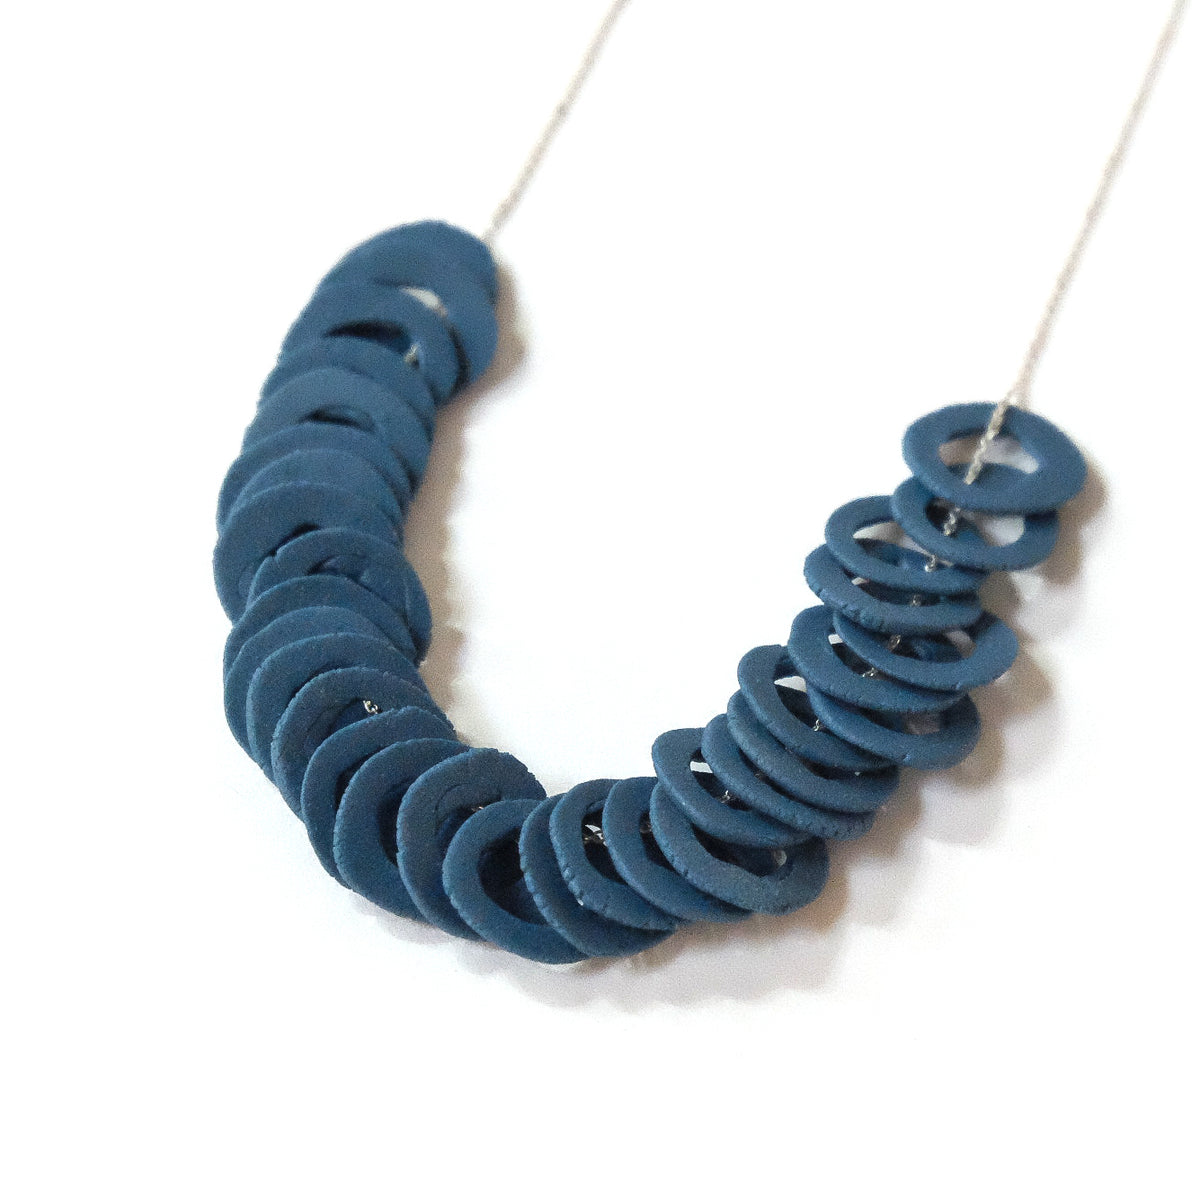 Ceramic Necklaces by Amanda Salov